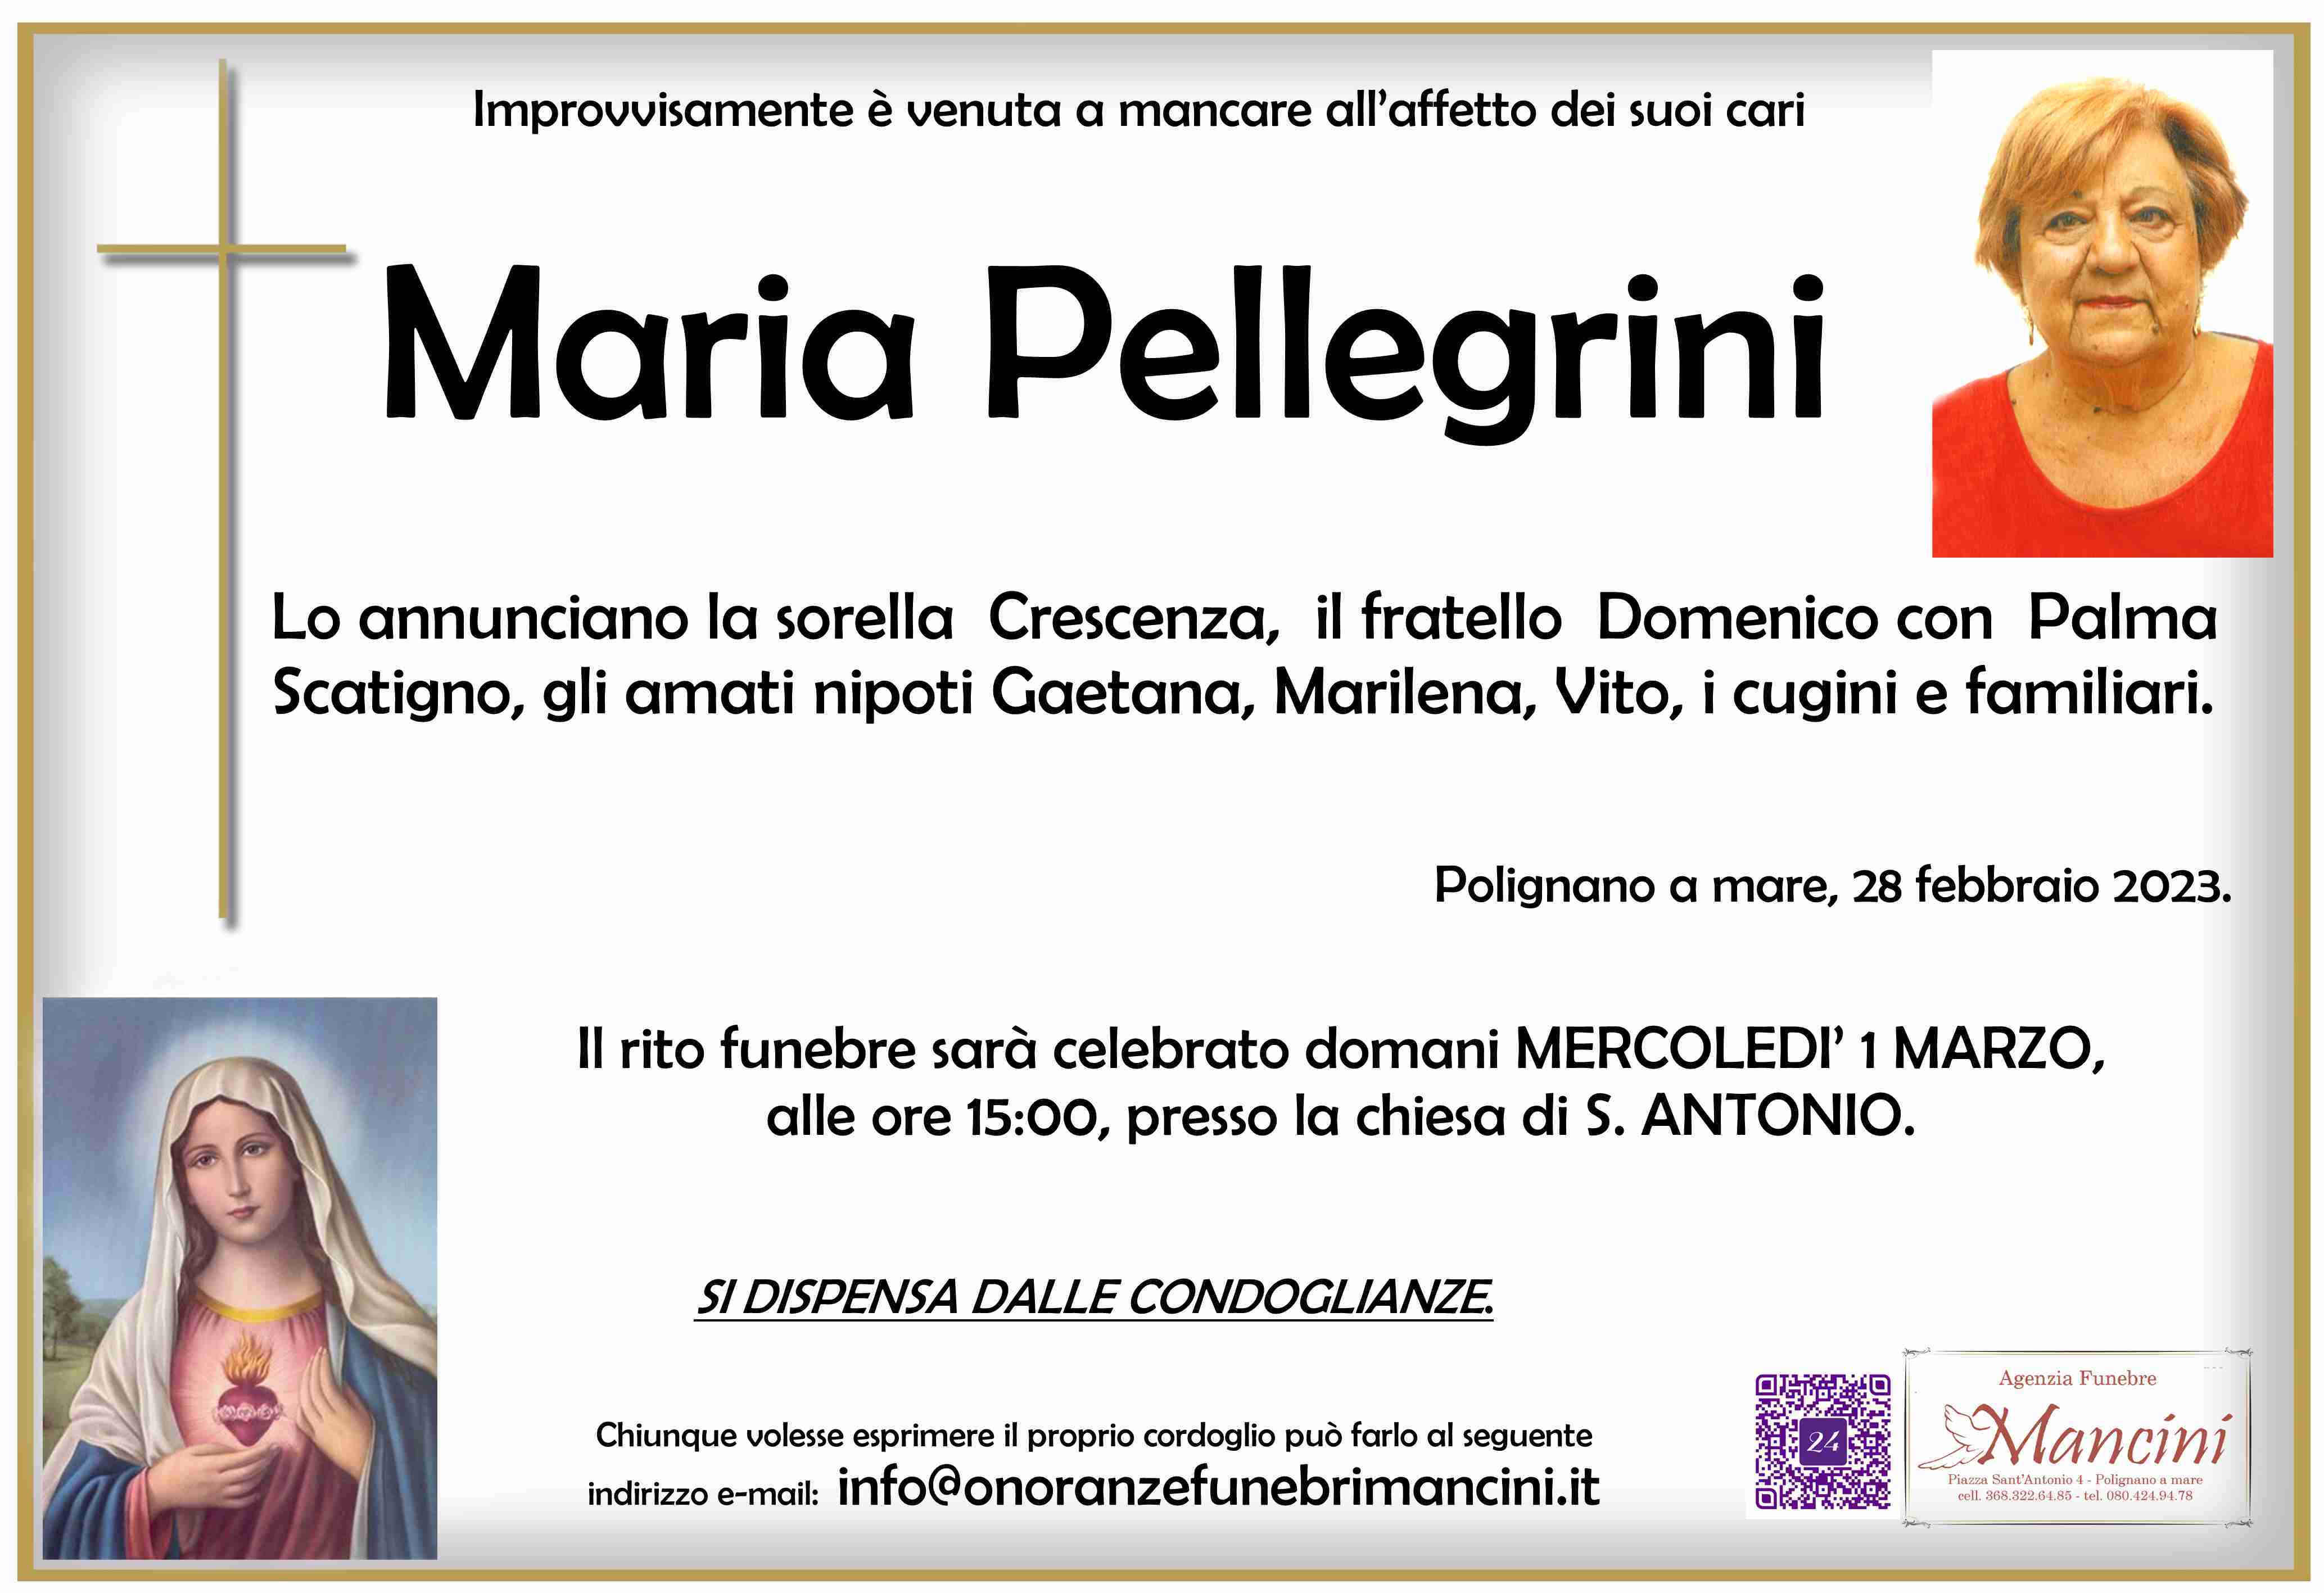 Maria Pellegrini